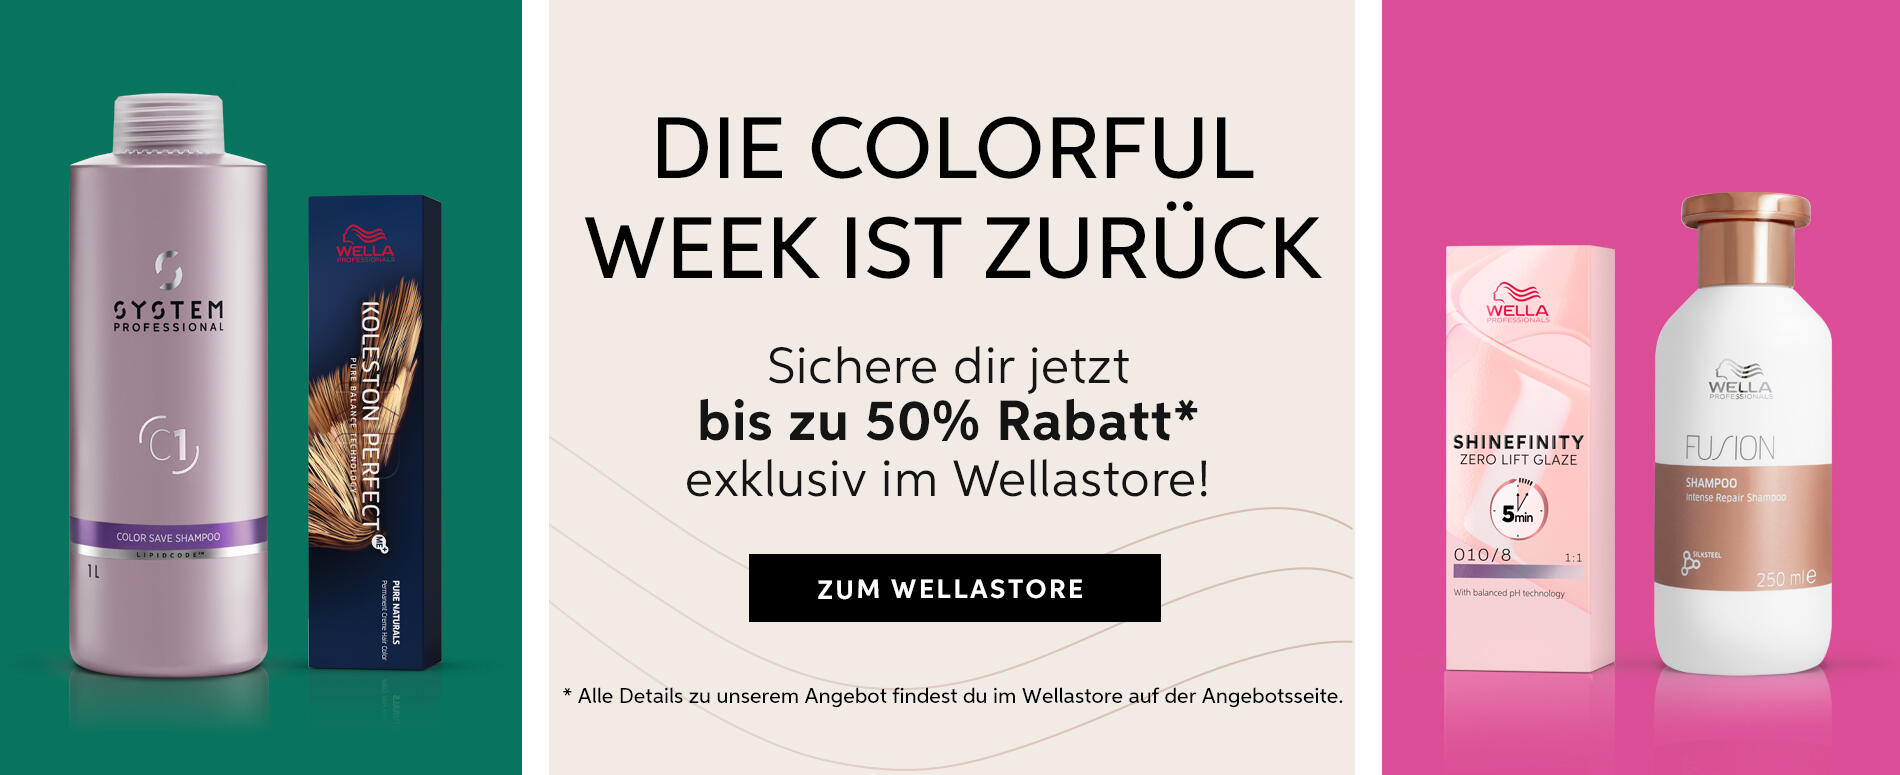 Colorful Week, DAS Angebot des Jahres, Bis zu 50% Rabatt on Top, Black Friday.